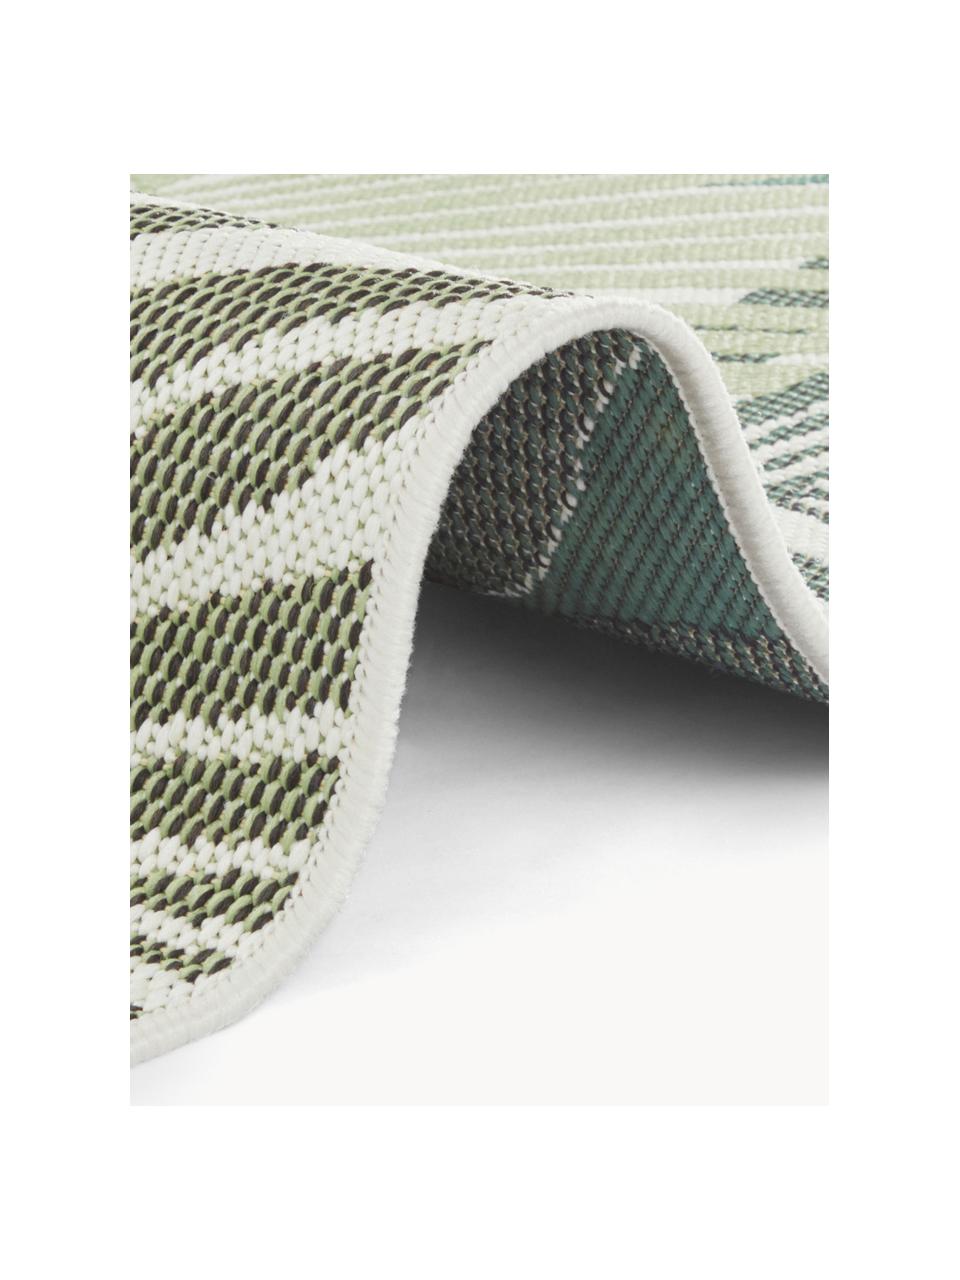 Interiérový/exteriérový koberec se vzorem listů Vai, 100 % polypropylen 

Materiál použitý v tomto produktu byl testován na škodlivé látky a certifikován podle STANDARD 100 od OEKO-TEX®1803035, Centexbel., Odstíny zelené, bílá, Š 80 cm, D 150 cm (velikost XS)